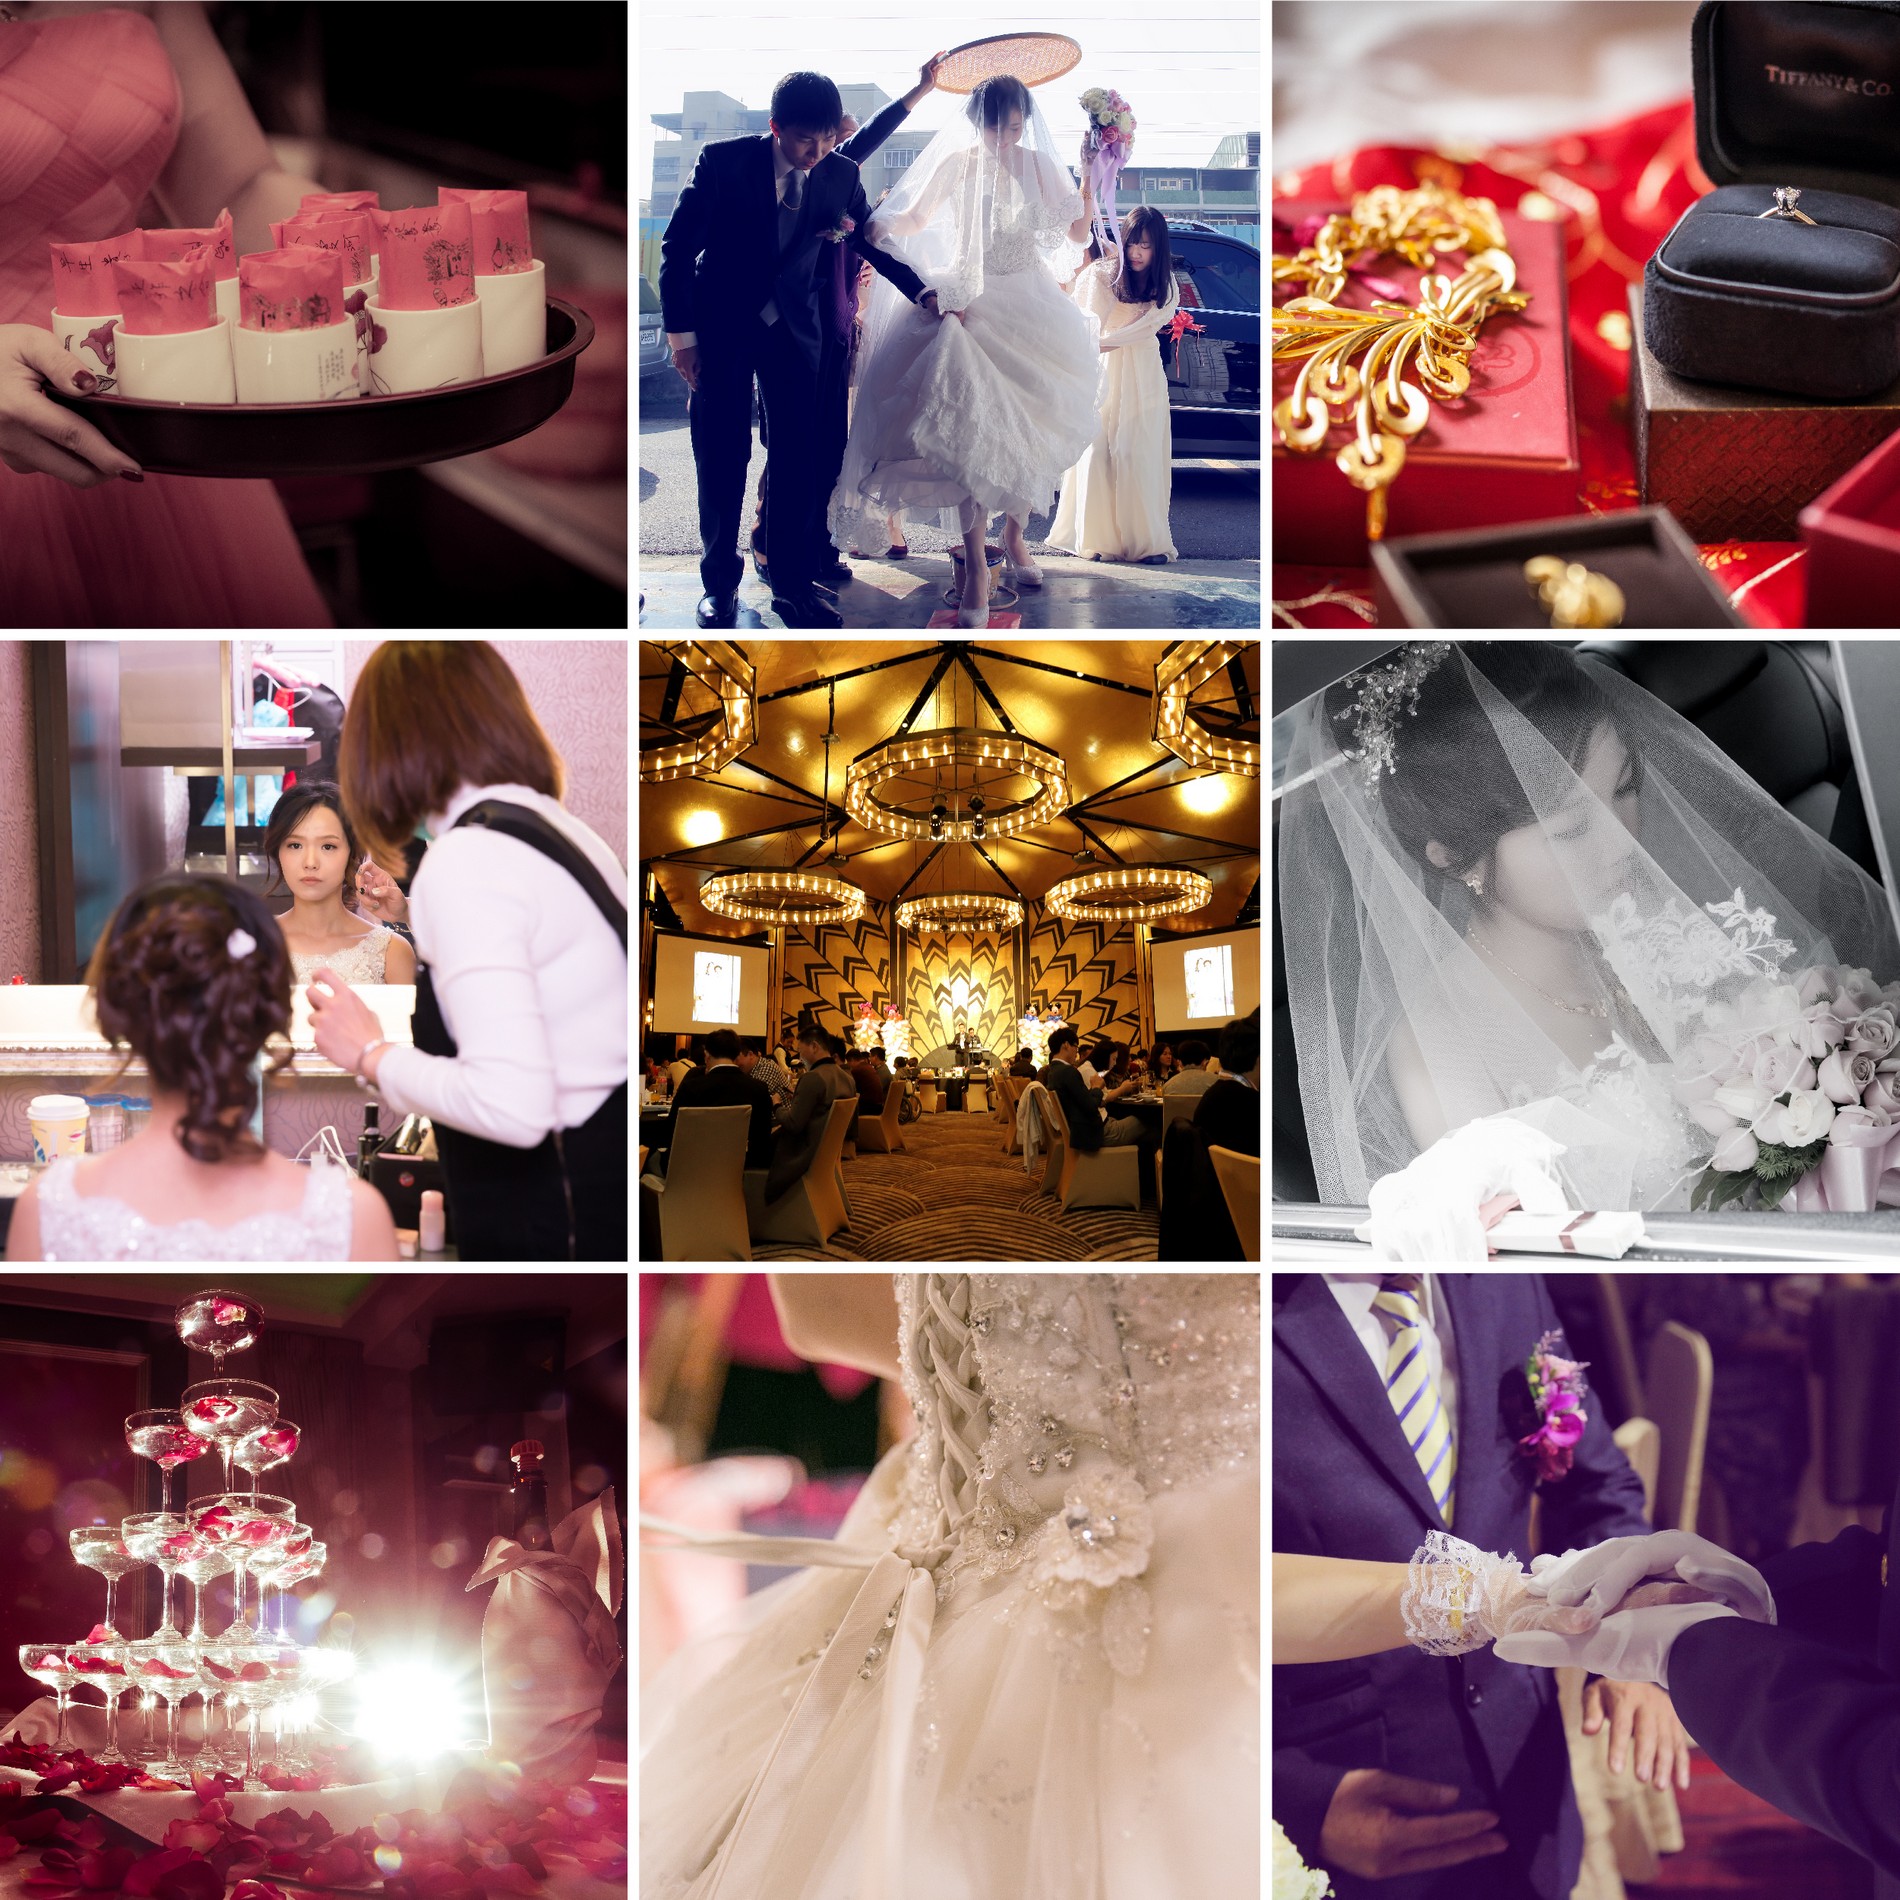 婚禮攝影,婚禮記錄,婚攝,婚禮攝影 推薦,婚攝 推薦,婚禮攝影 方案,婚攝 價格